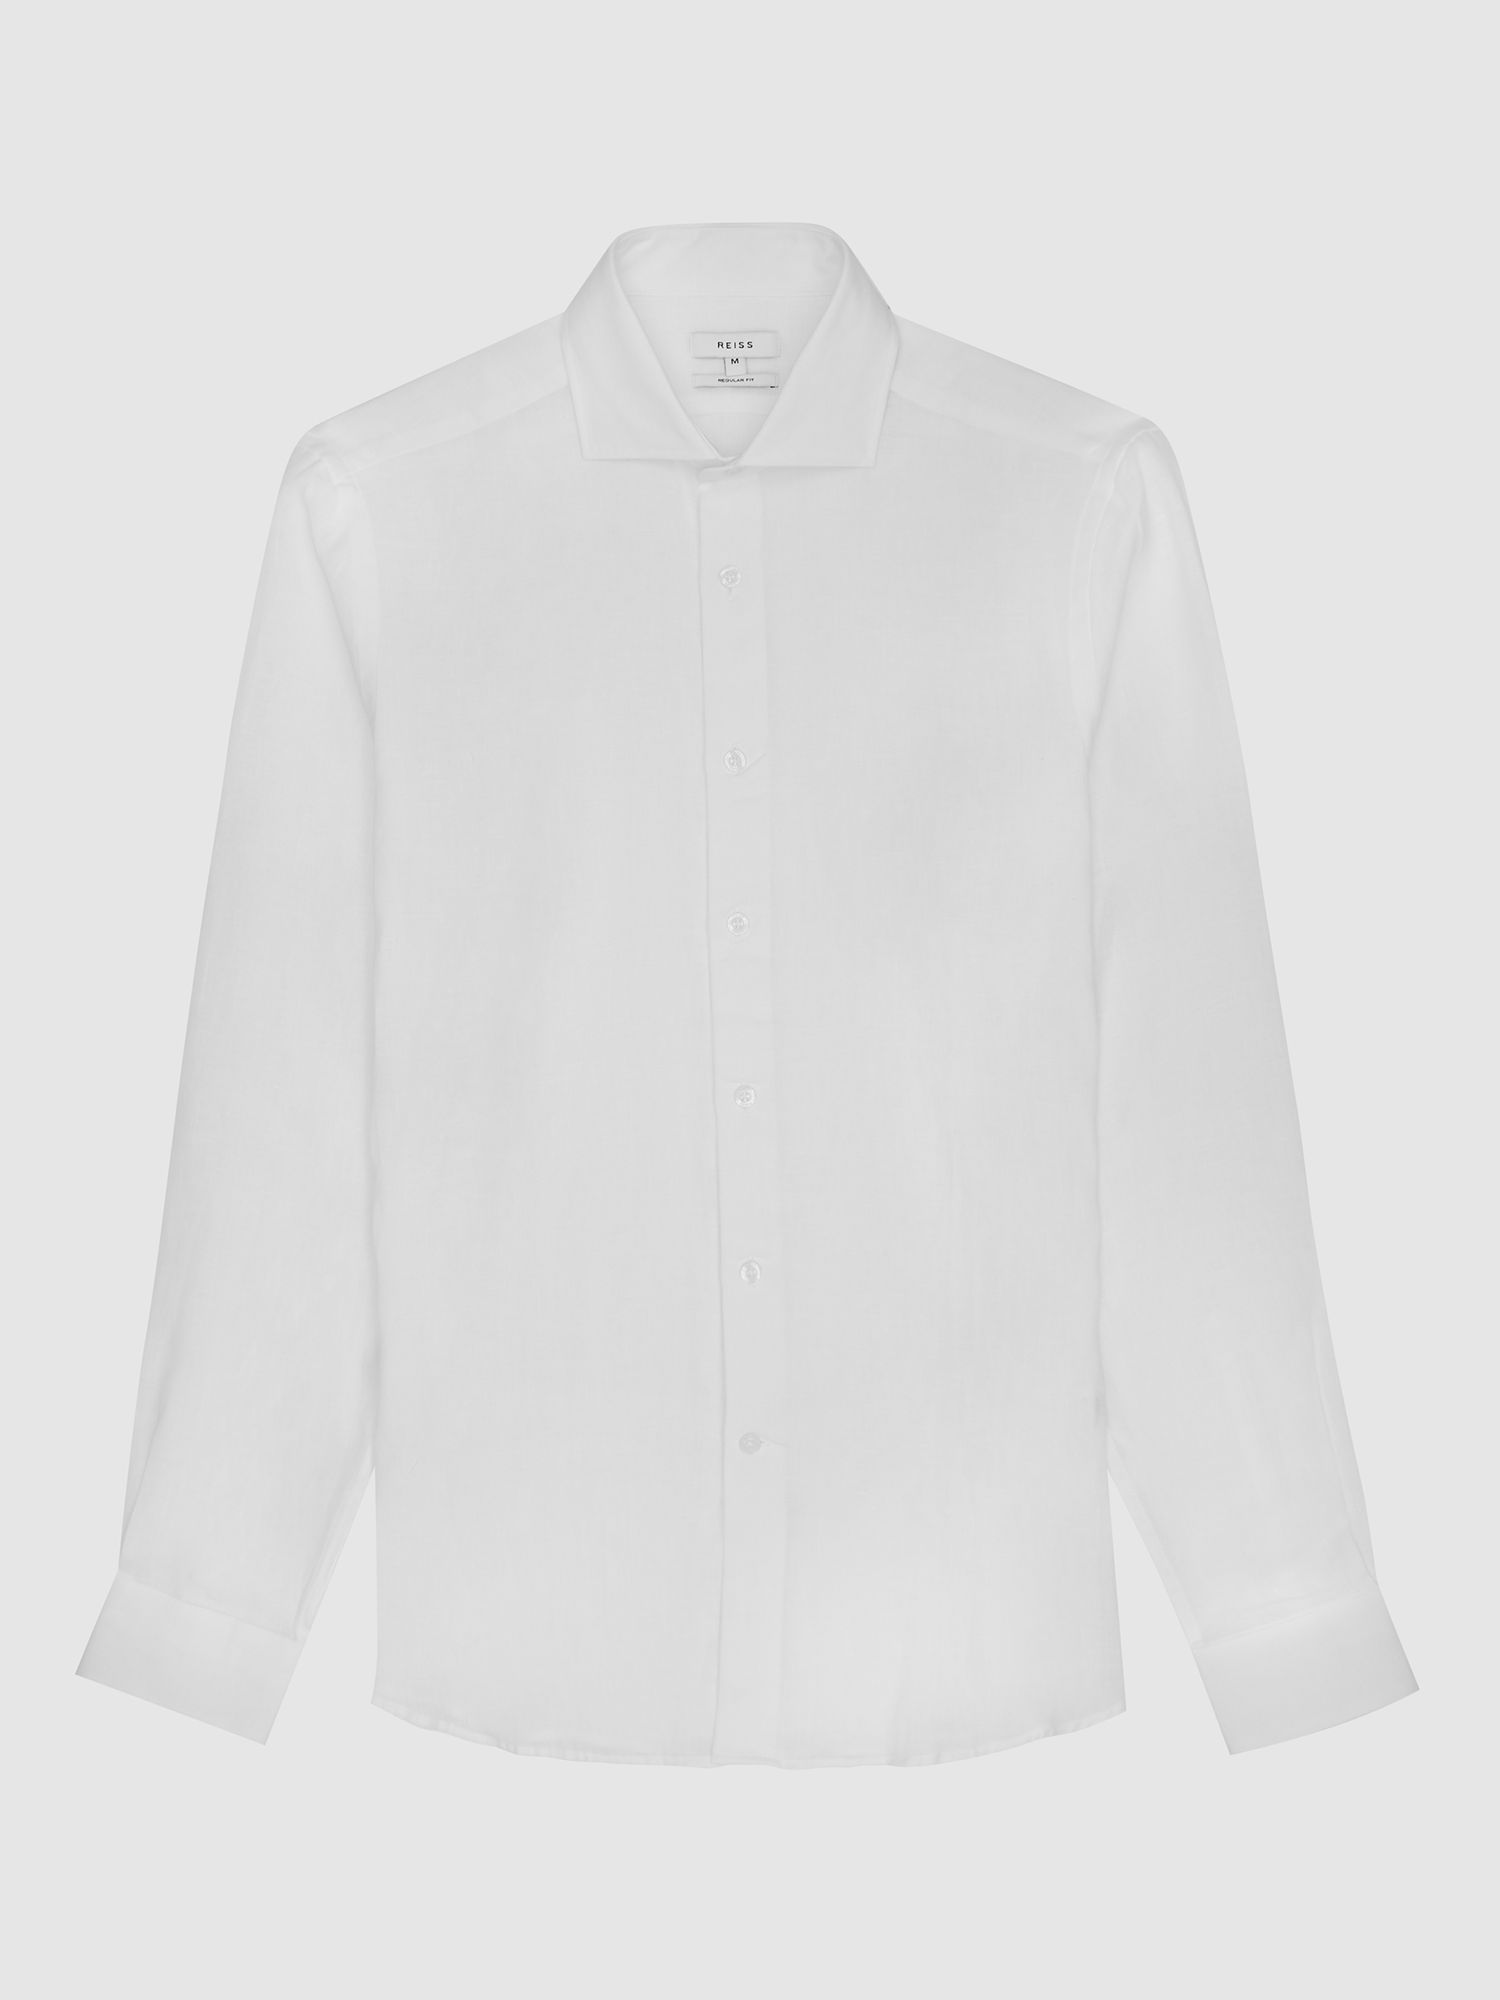 Reiss Ruban Regular Fit Linen Shirt, White, XS